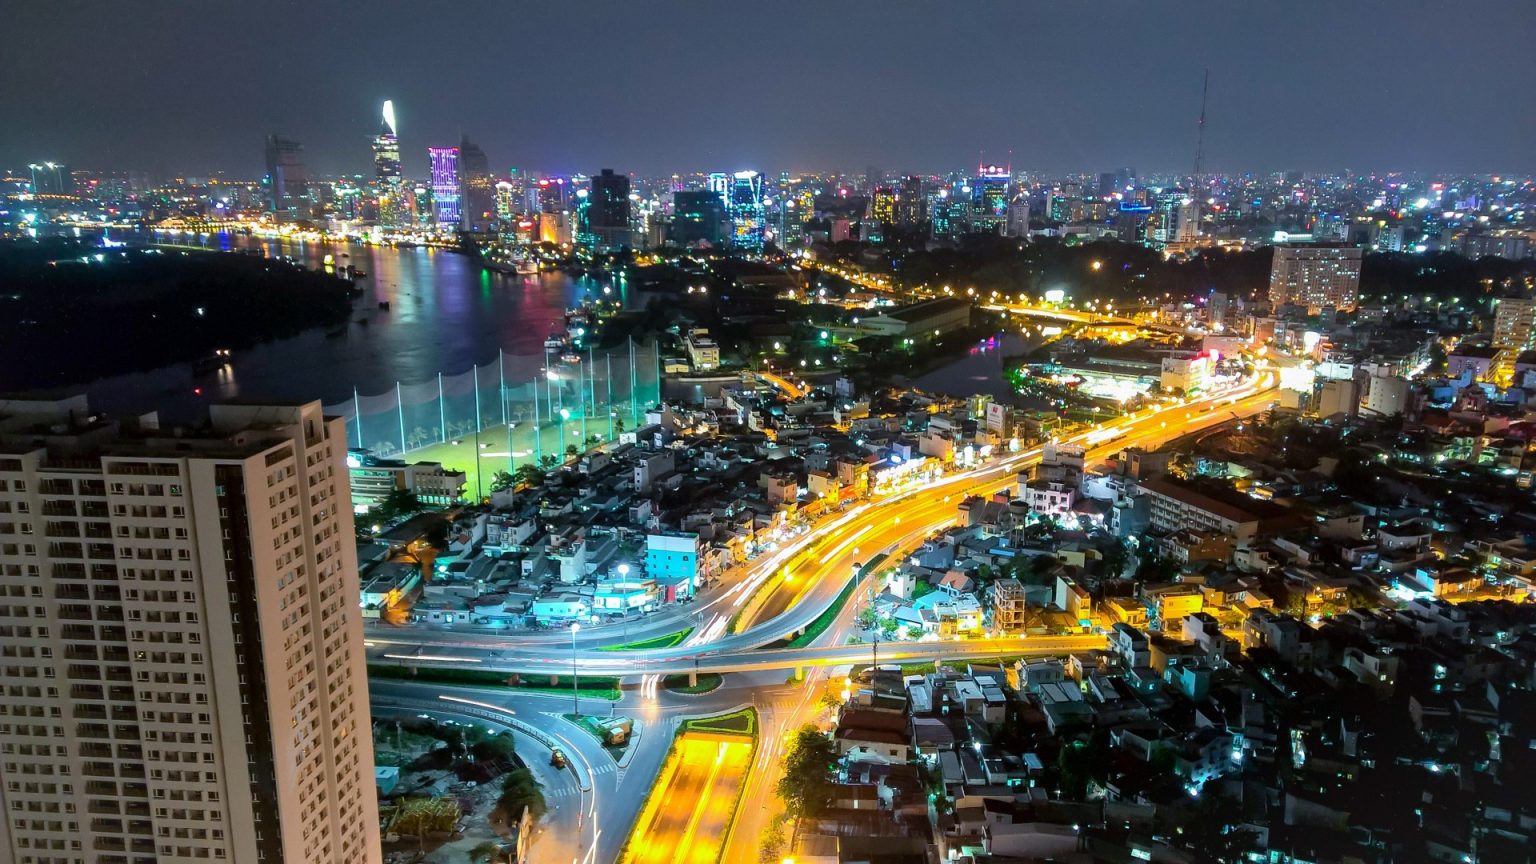 Ngắm trọn khoảnh khắc Sài Gòn về đêm đẹp lung linh như tranh vẽ